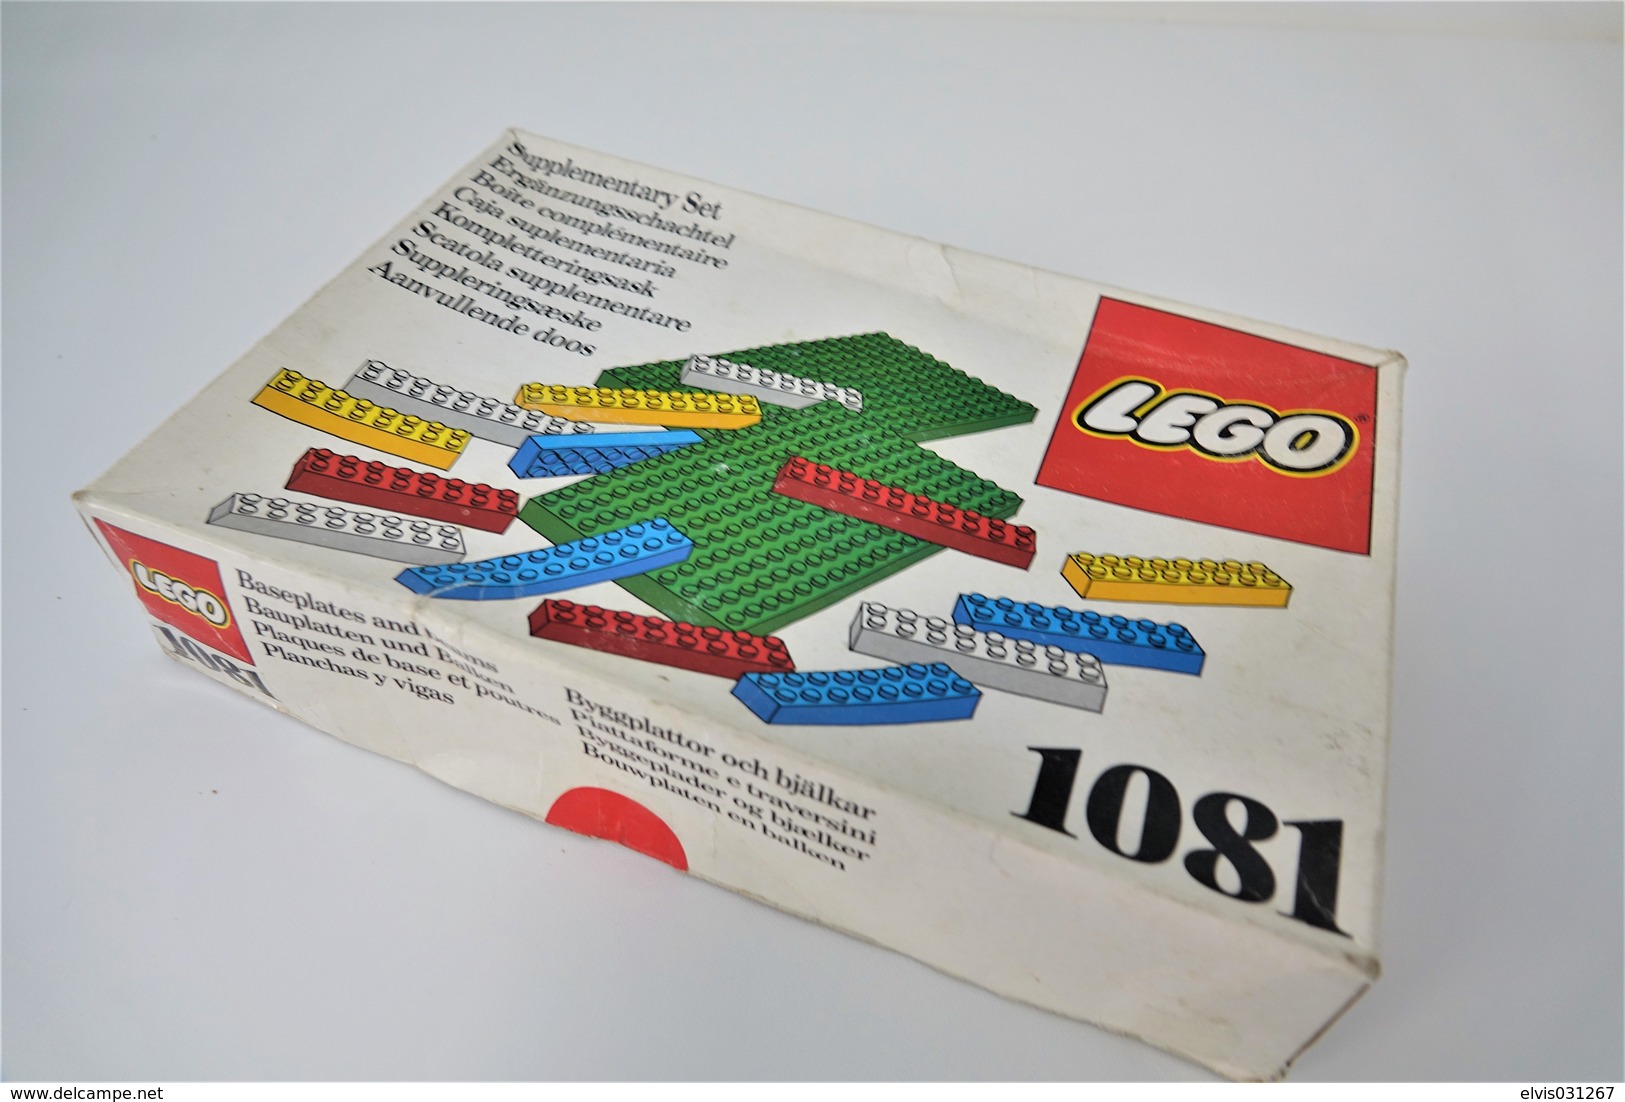 LEGO - 1081 Supplementary Box - Very Rare - Original Box - Original Lego 1976 - Vintage - Catálogos